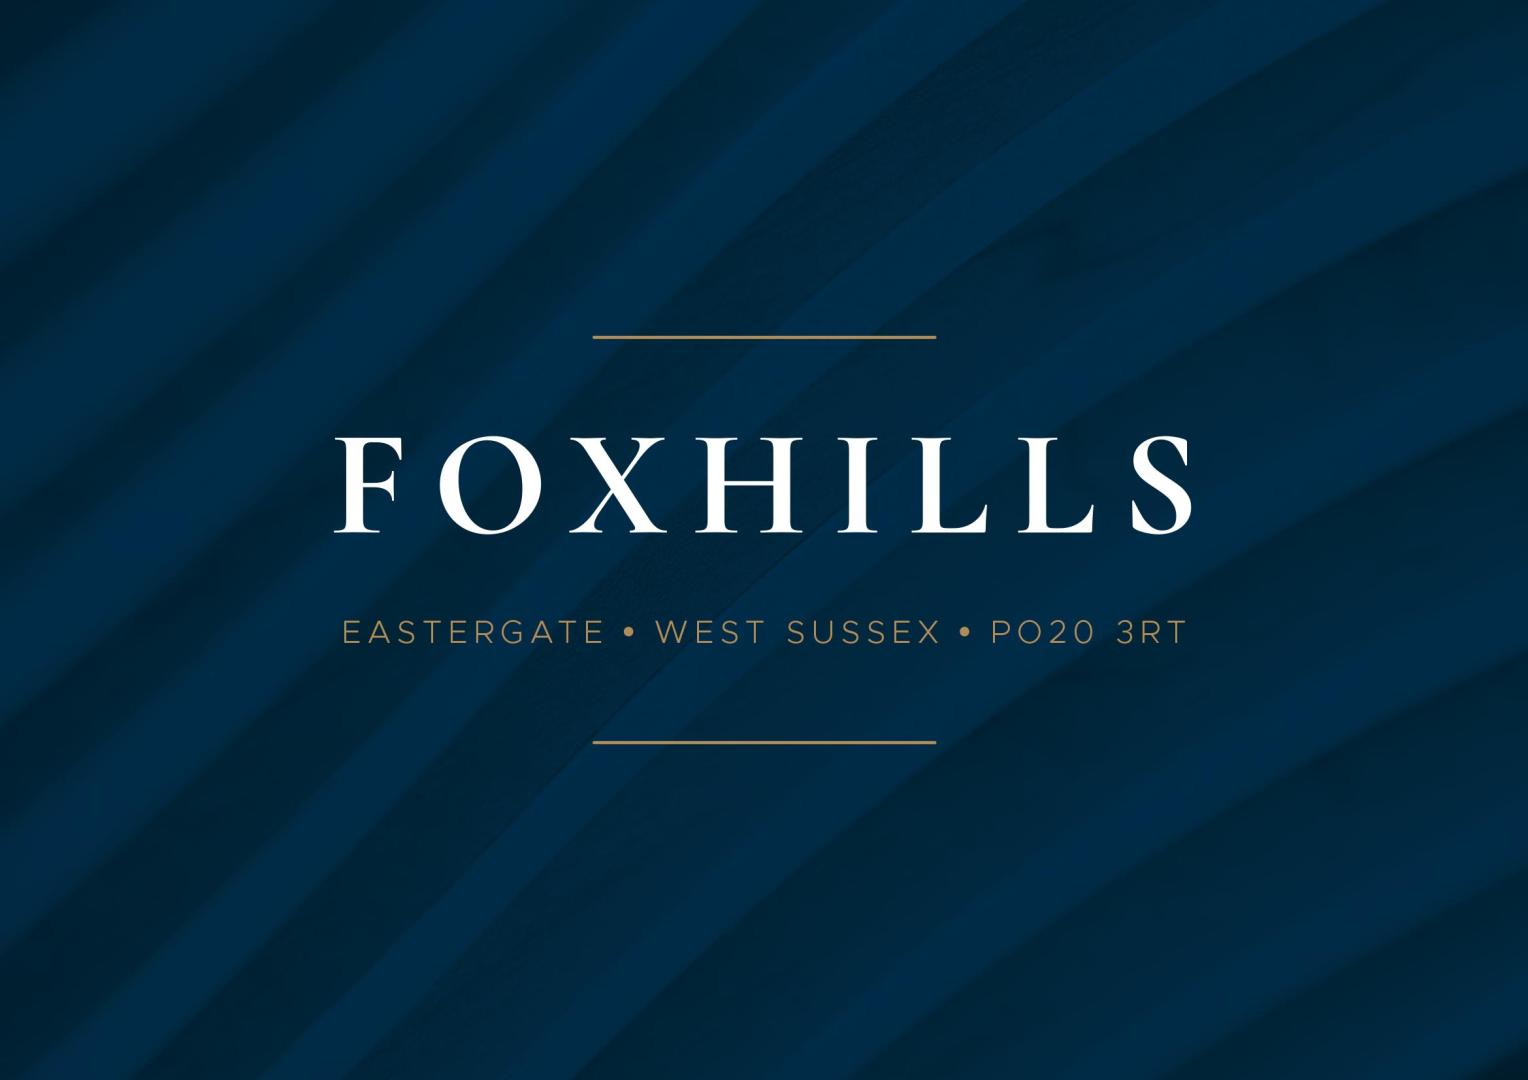 Foxhills